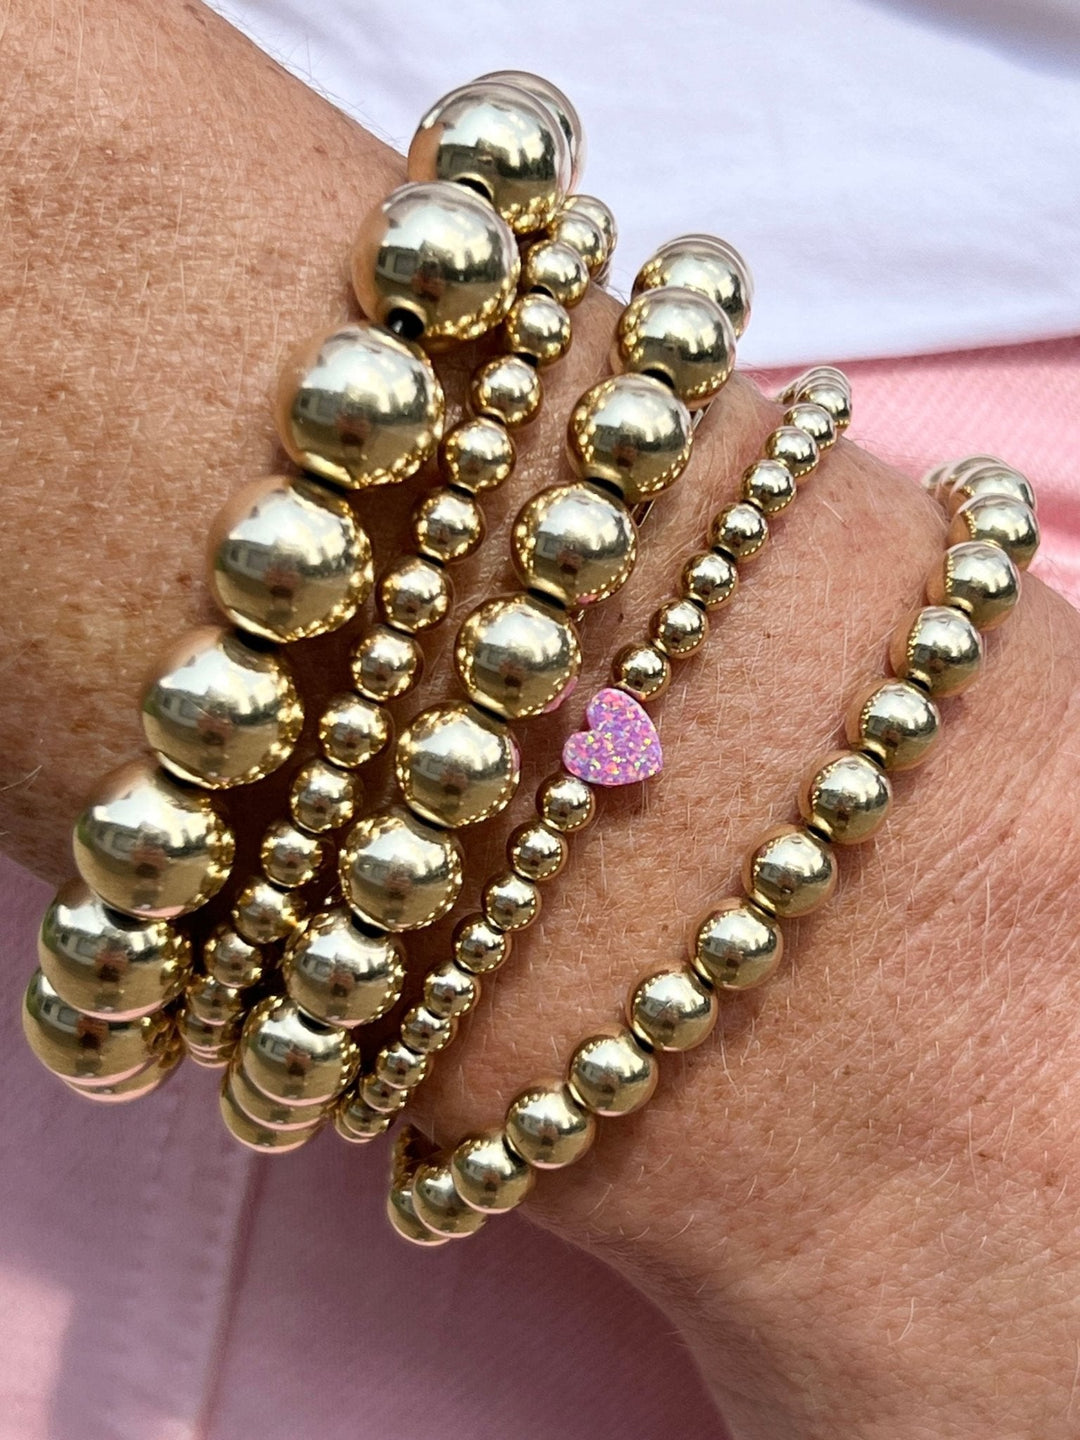 Opal Breast Cancer Awareness Bracelet